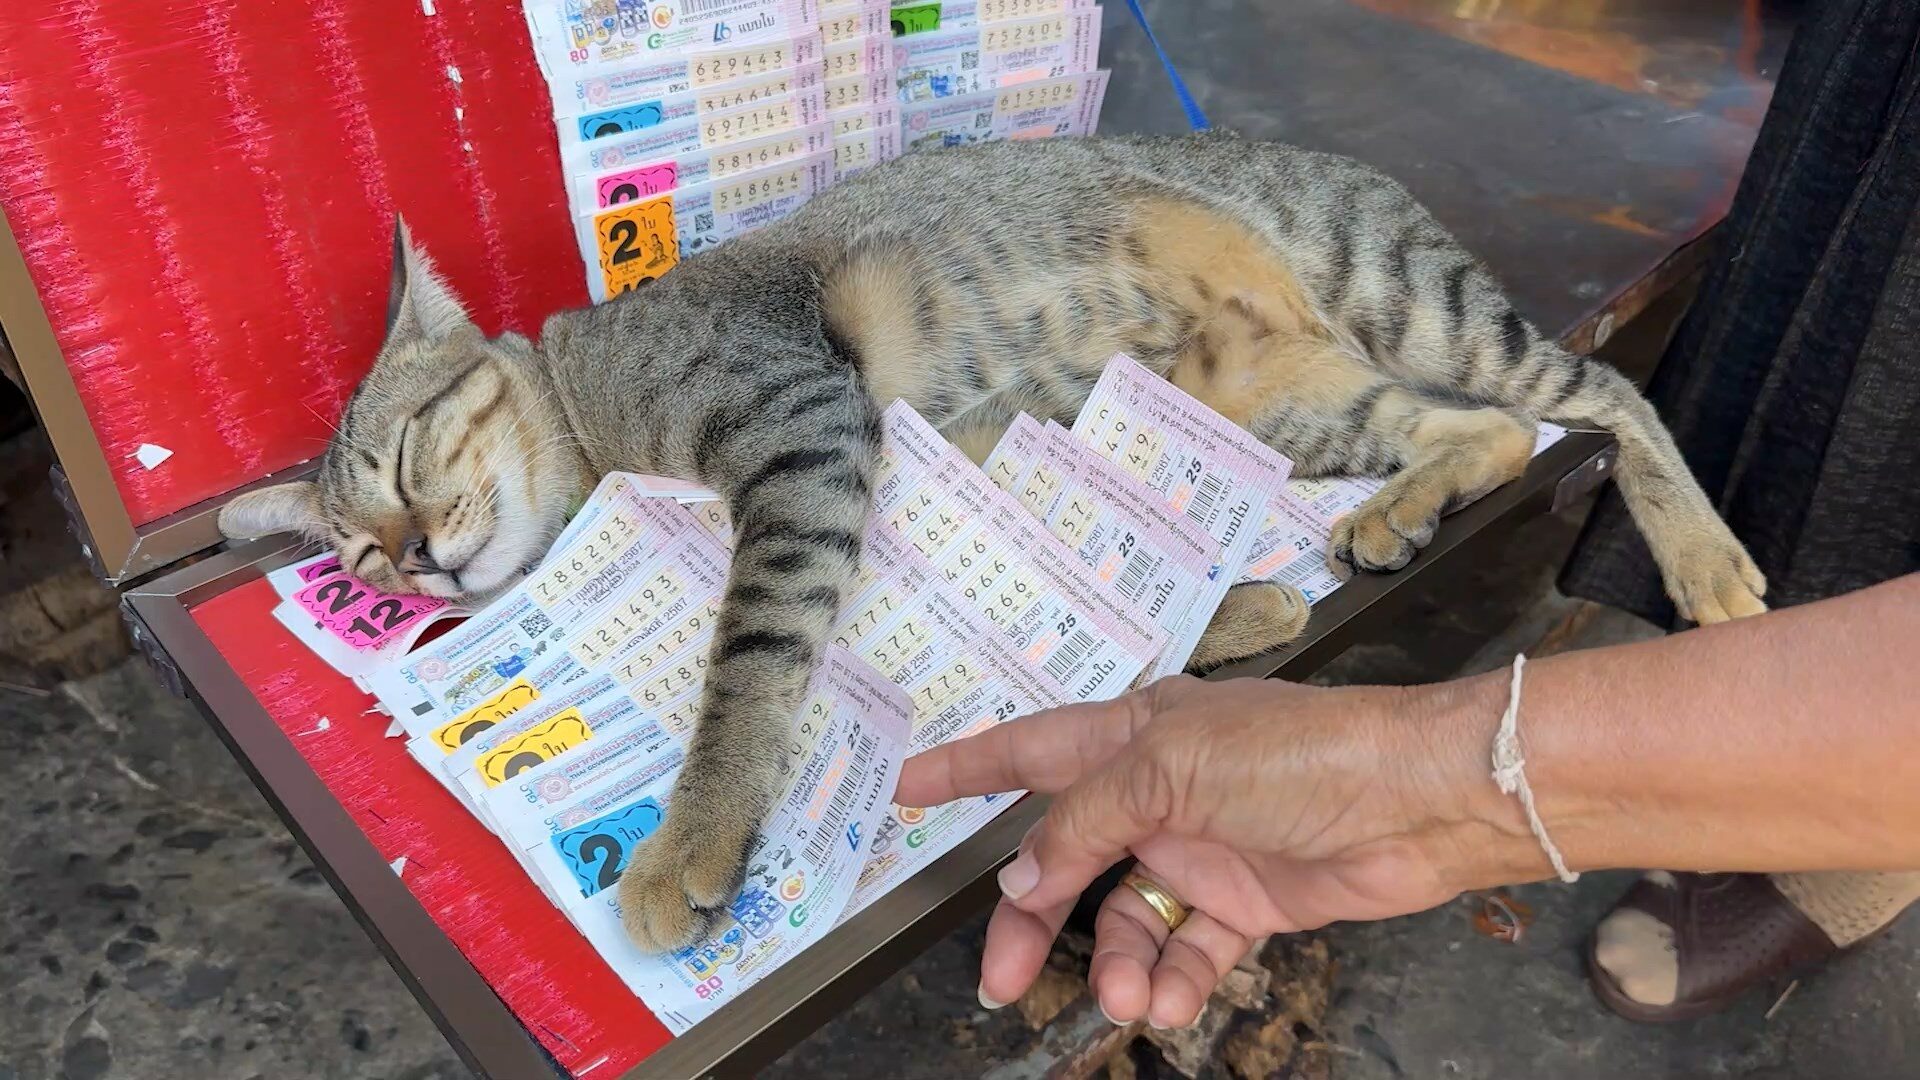 แม่ค้าสุดงง อยู่ๆขายดี เจ้าแมวขี้เซา ขึ้นนอนทับแผงลอตเตอรี่ คนแห่ซื้อ แอบส่งเลขน้อง